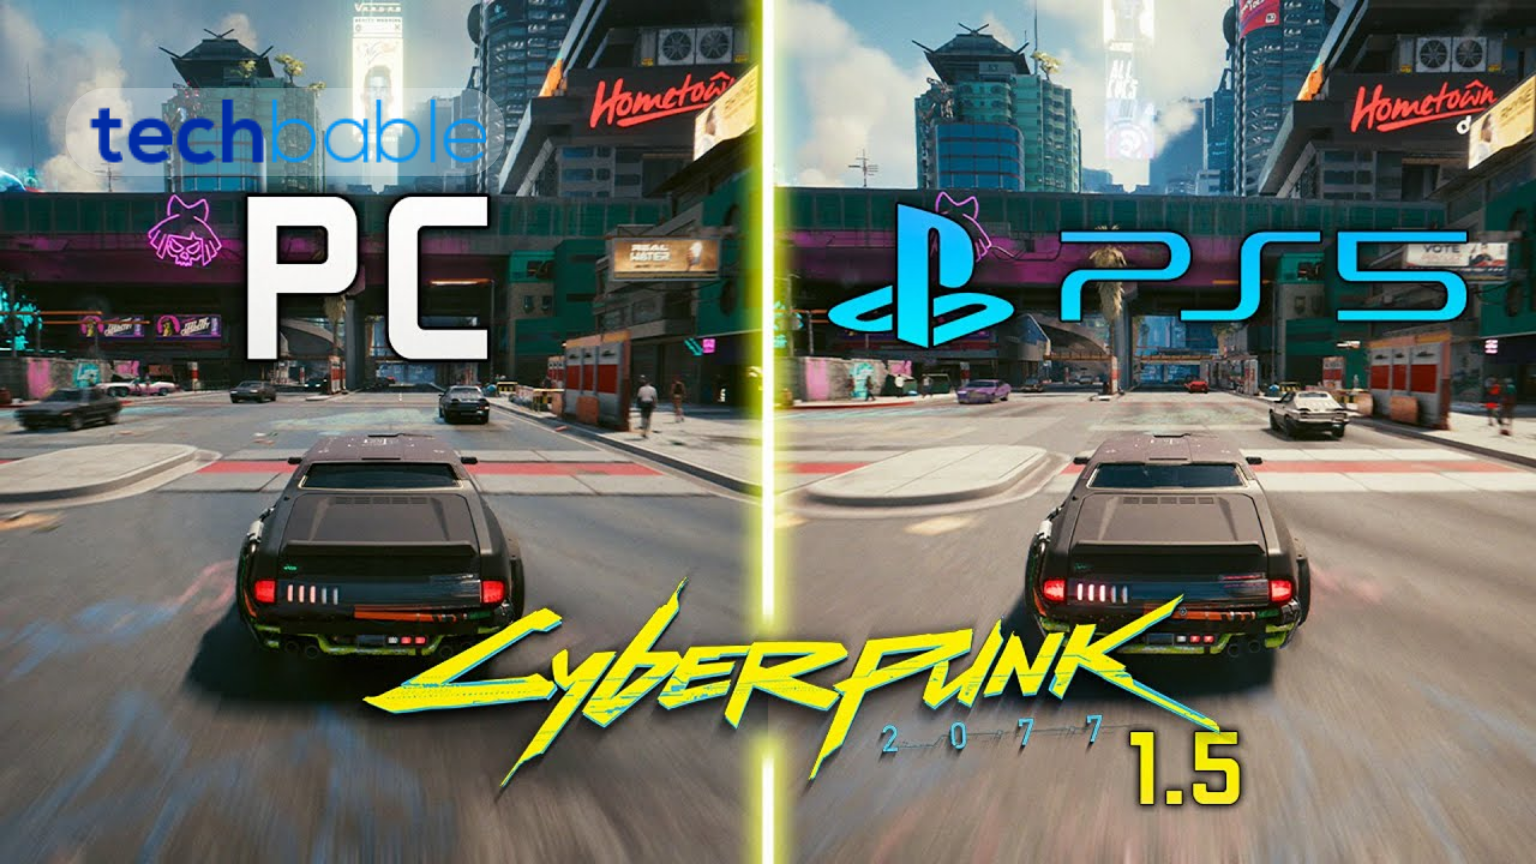 Is Cyberpunk 2077 on PS5?